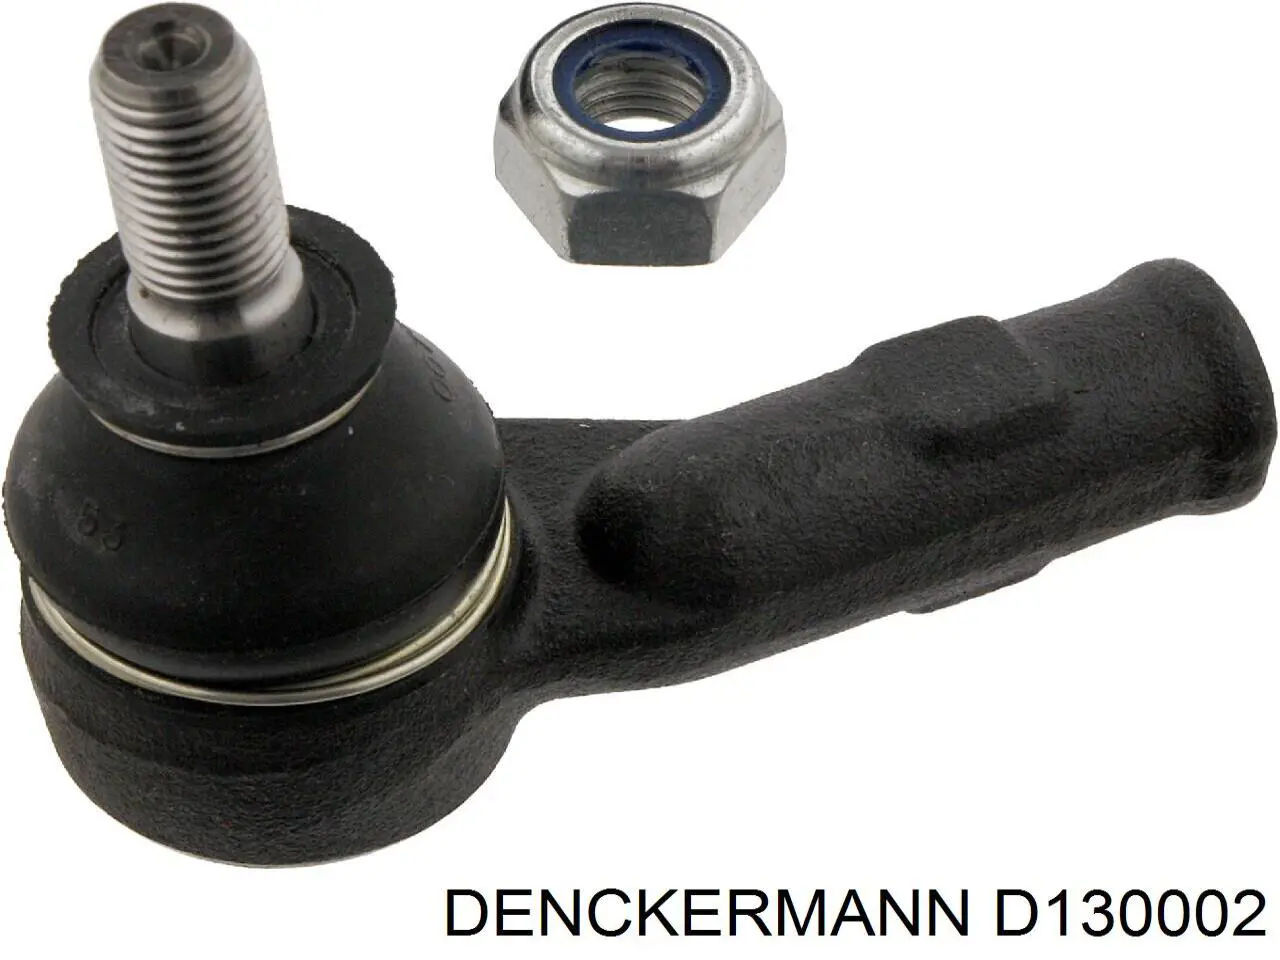 D130002 Denckermann rótula barra de acoplamiento exterior